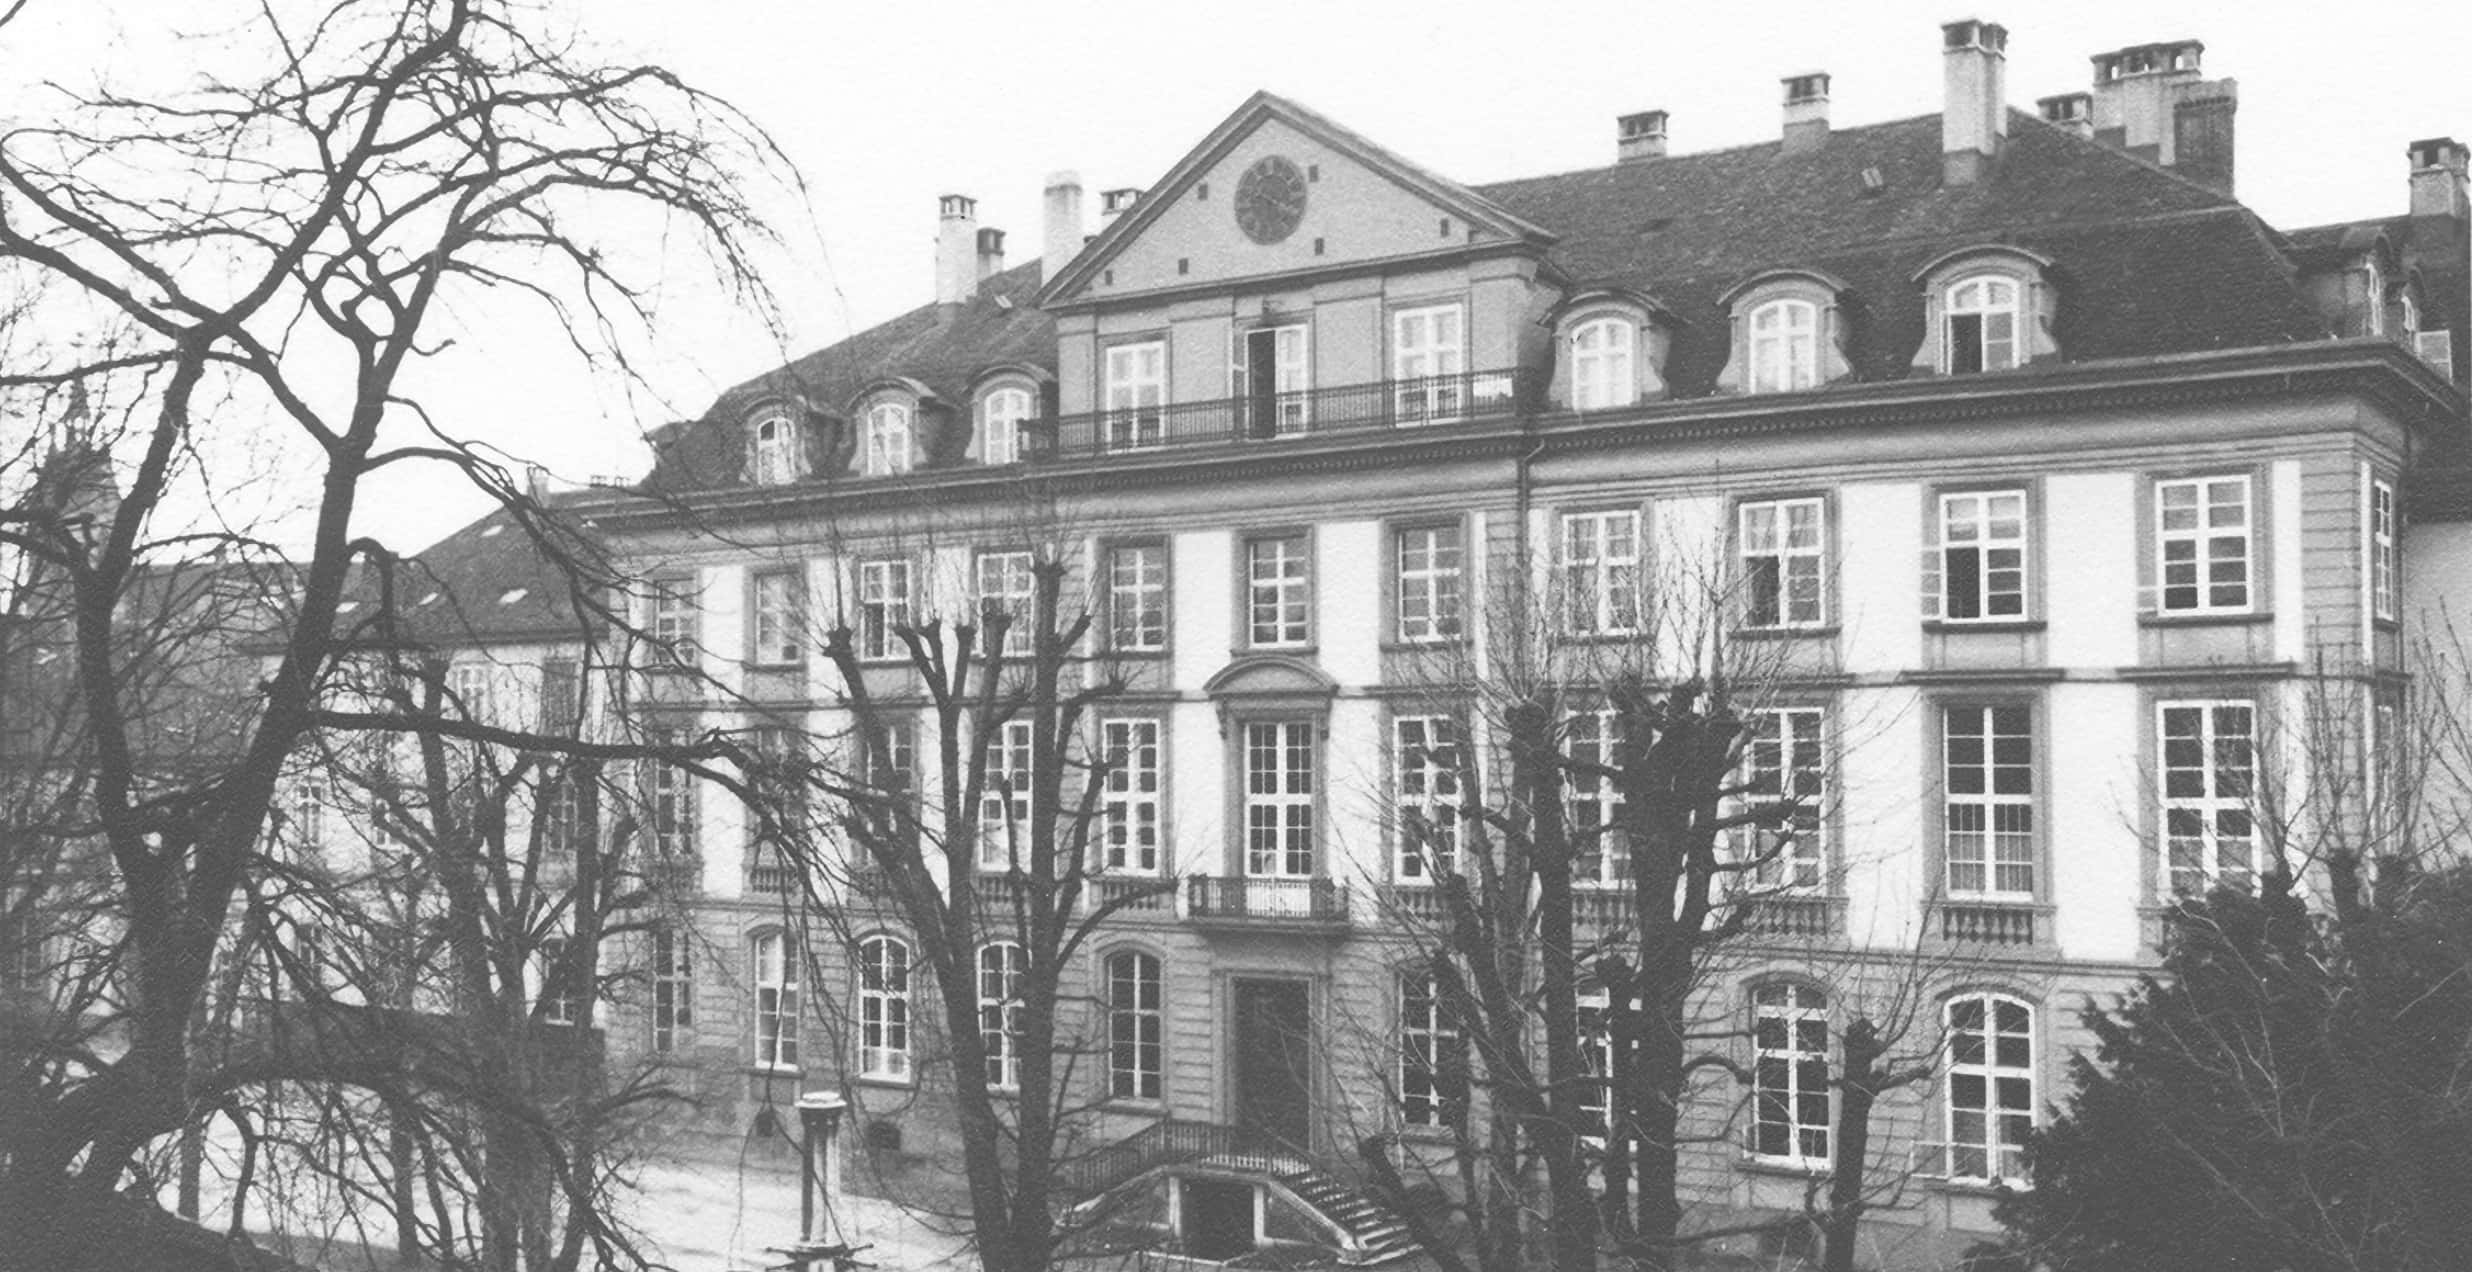 schwarz-weiss Bild der psychiatrischen Klinik, Gebäude aus dem 19. Jahrhundert<br/>